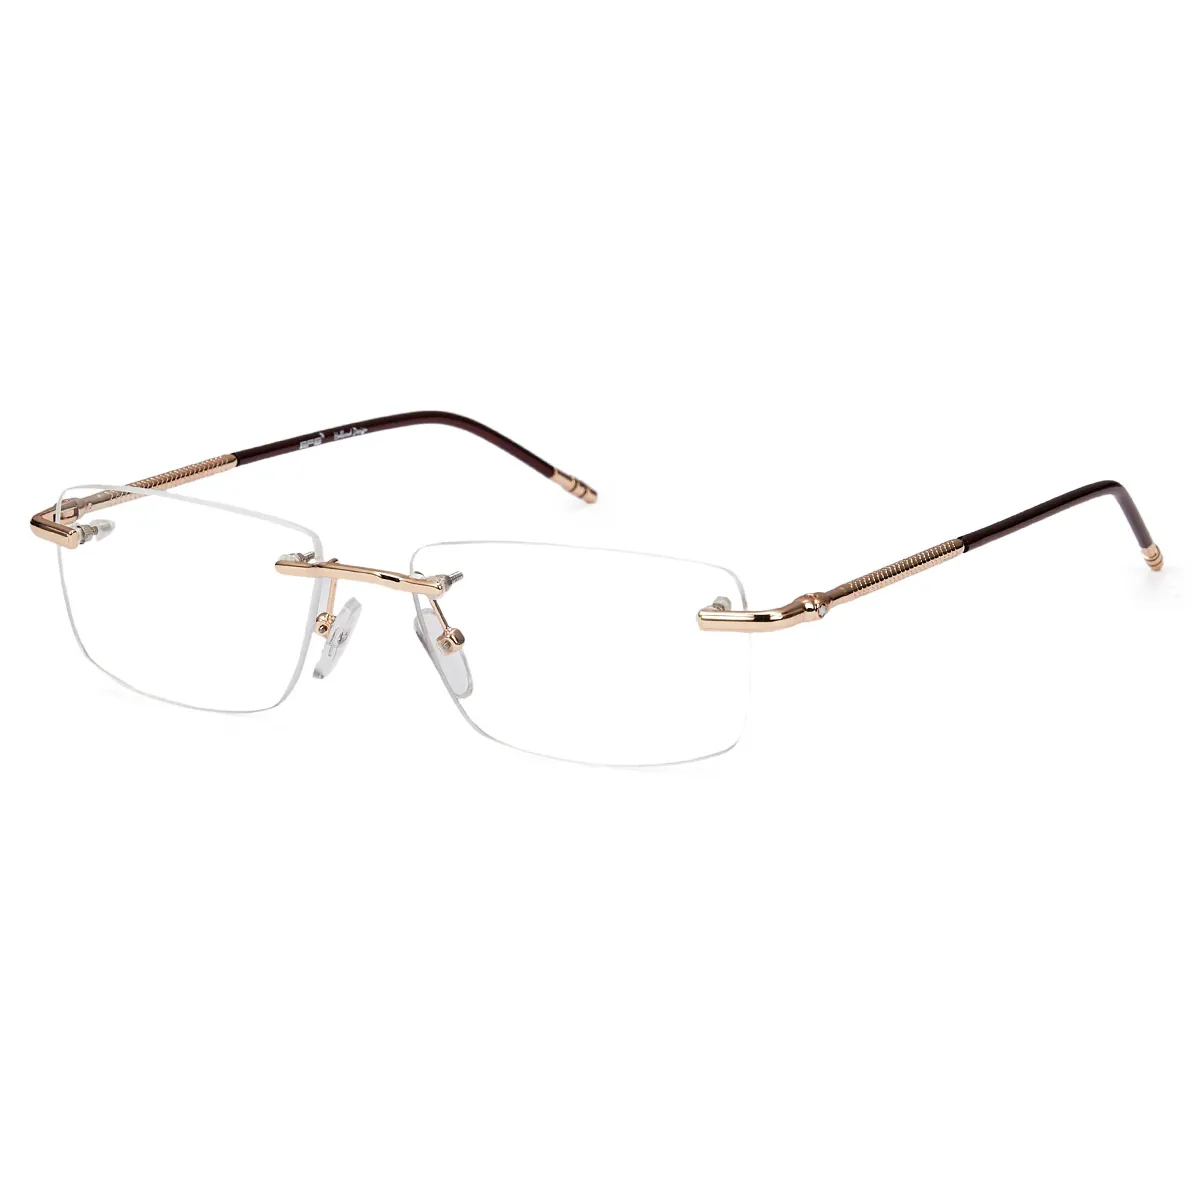 Greene - Rectangle Brown Glasses for Men & Women